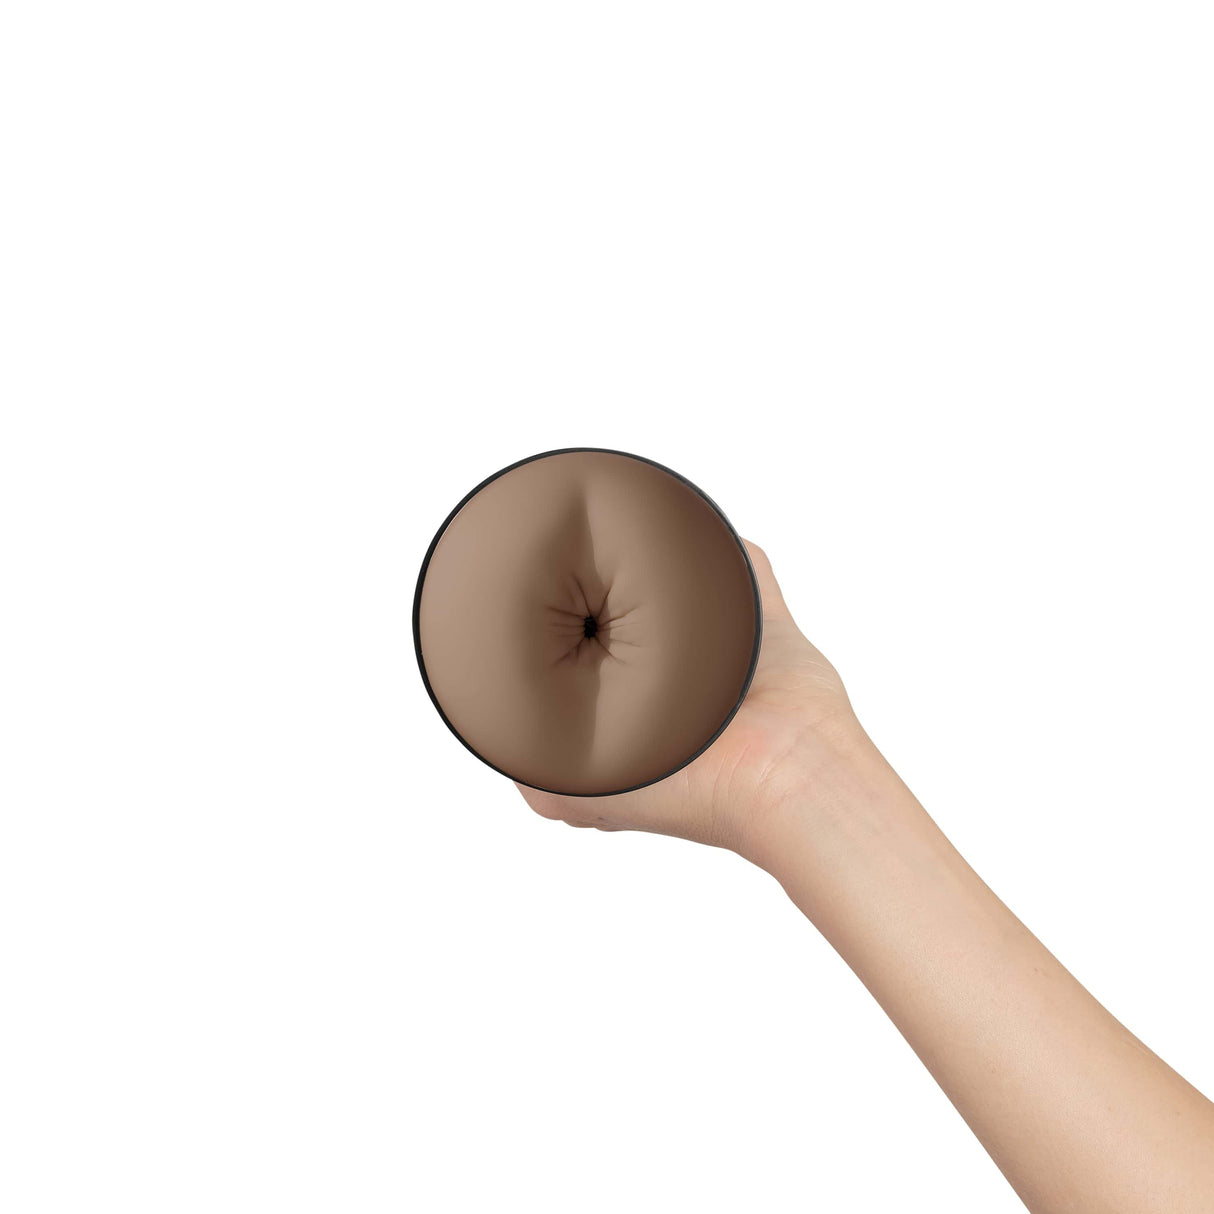 Kiiroo - Feel Generic Stroker Butt Sleeve Male Masturbator (Mid Brown)    Masturbator Vagina (Non Vibration)